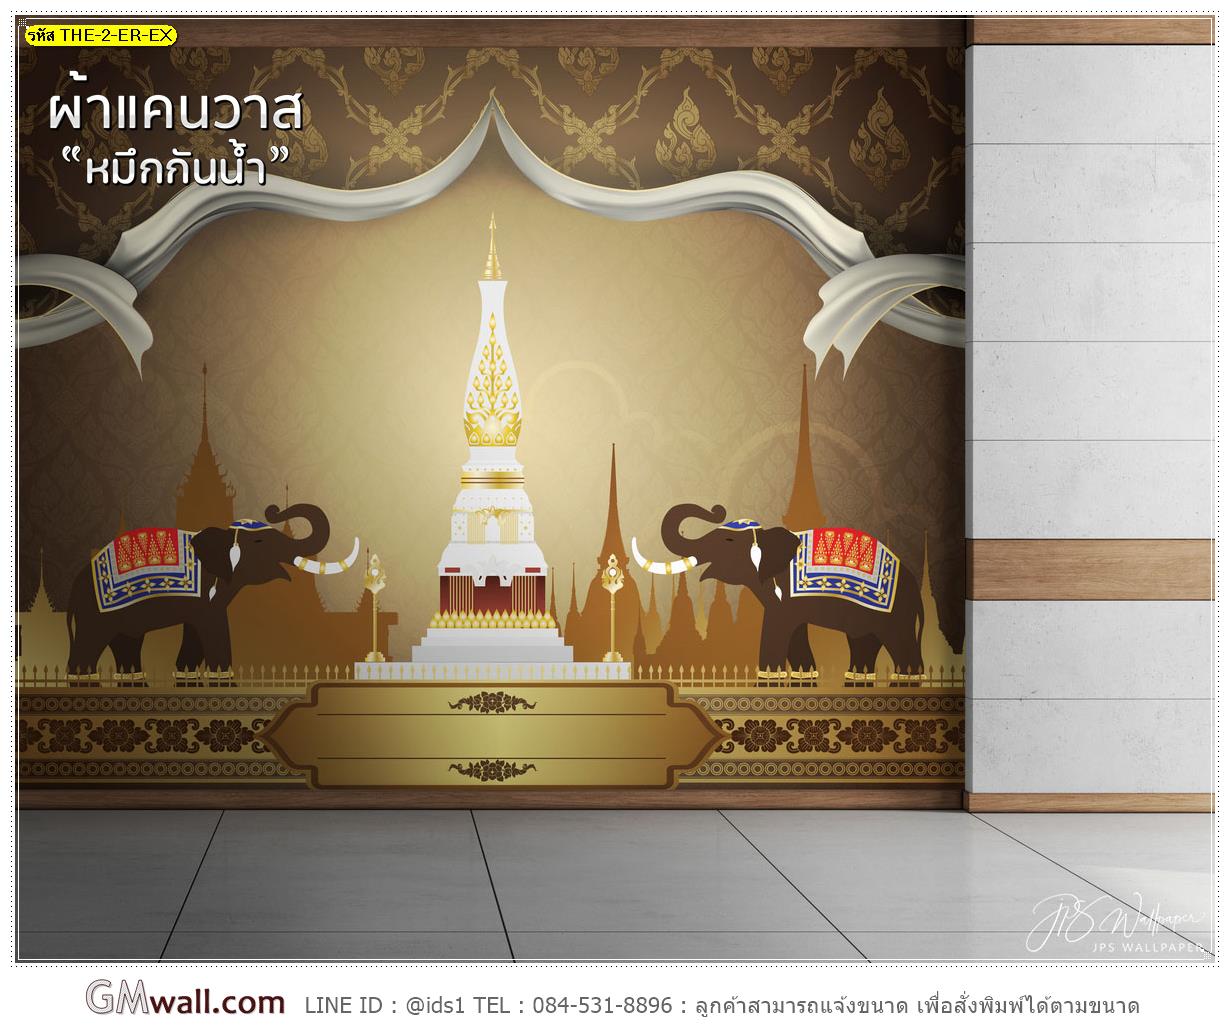 ภาพวอลเปเปอร์สั่งพิมพ์ลายช้างไทย